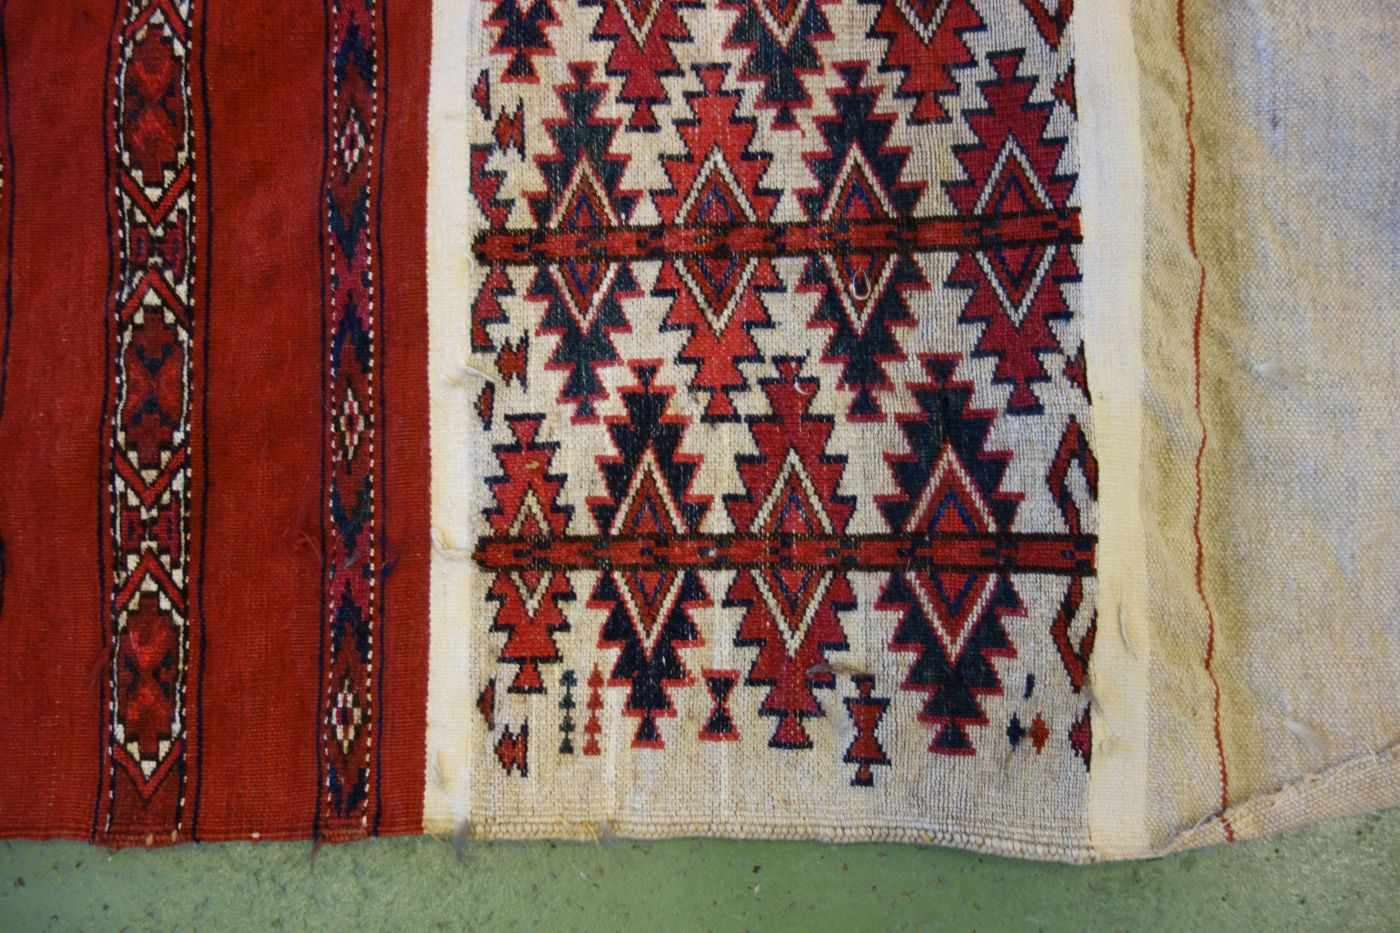 TEKKE AK-TSCHOWAL / TEPPICH / carpet, Turkmenistan, wohl 2. H. 19. Jh., Wechsel von Flor und - Bild 5 aus 18